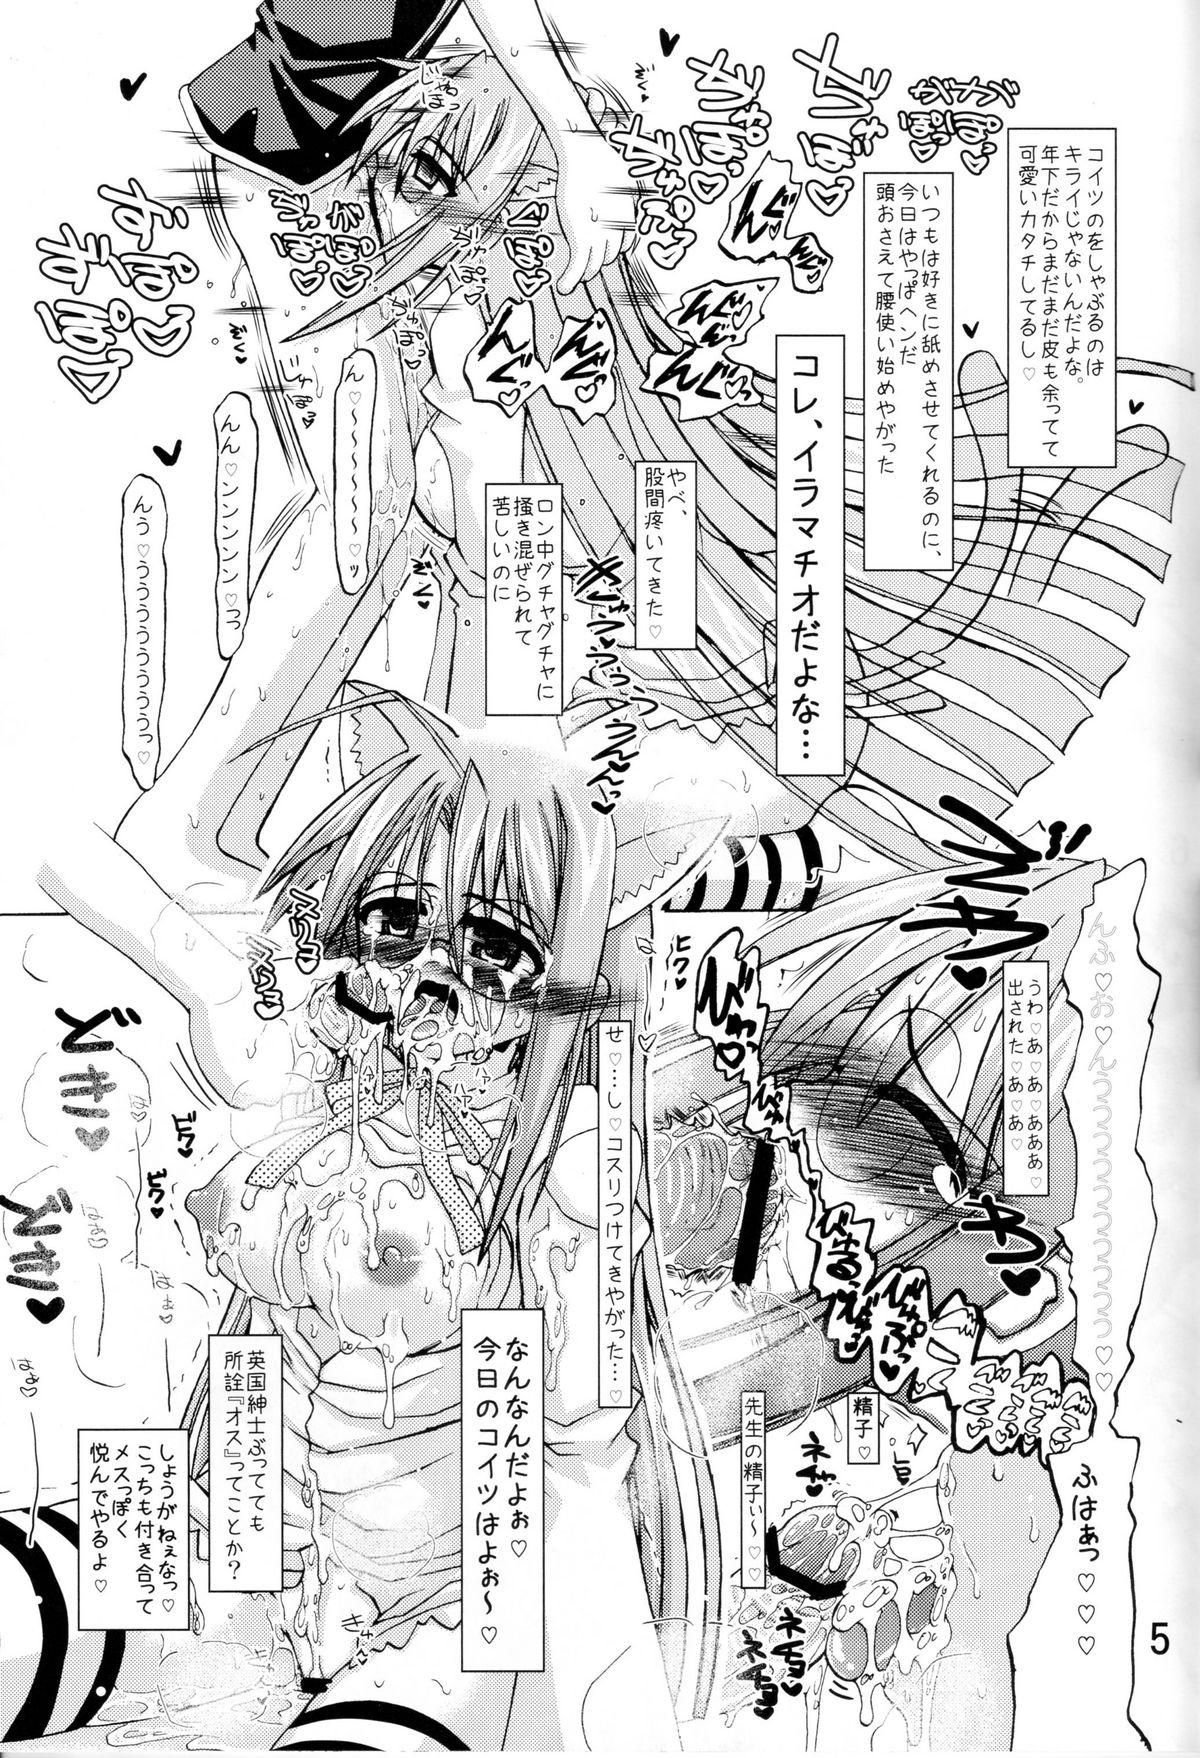 Top TRI GIRL - Mahou sensei negima Semen - Page 5